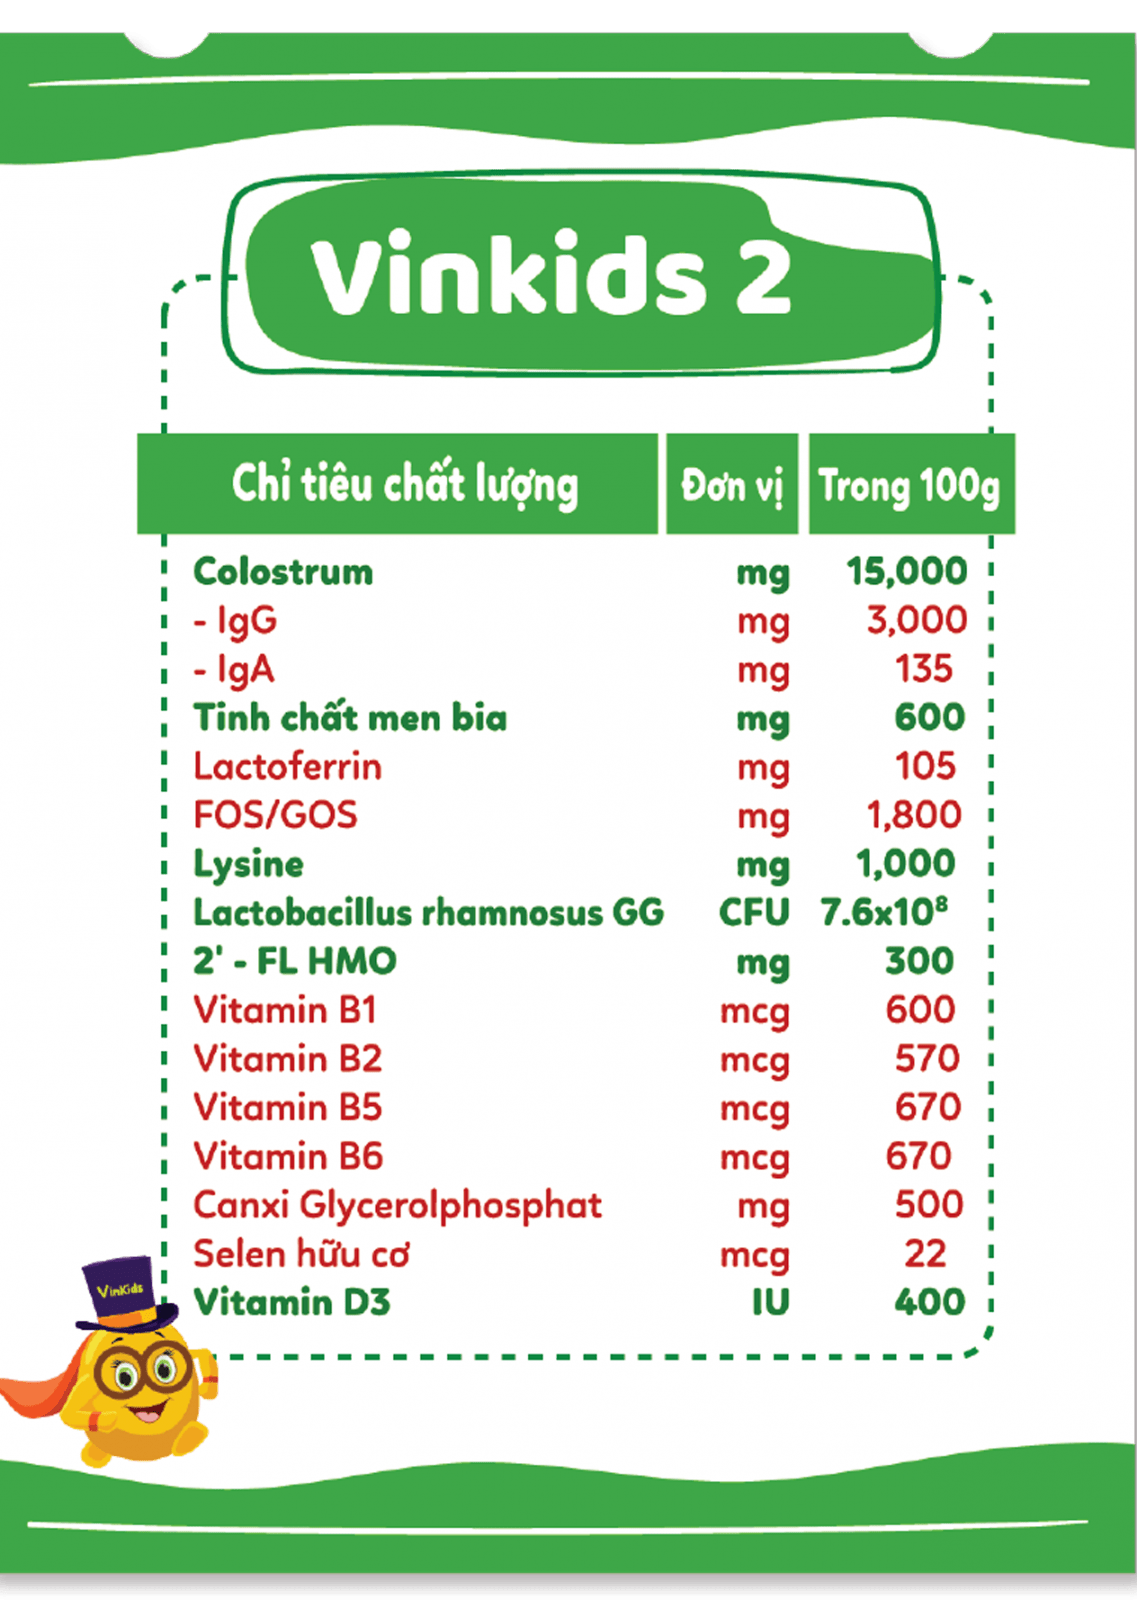 Sữa non Vinkids số 2 Pedia - Tăng cân an toàn, khoẻ mạnh